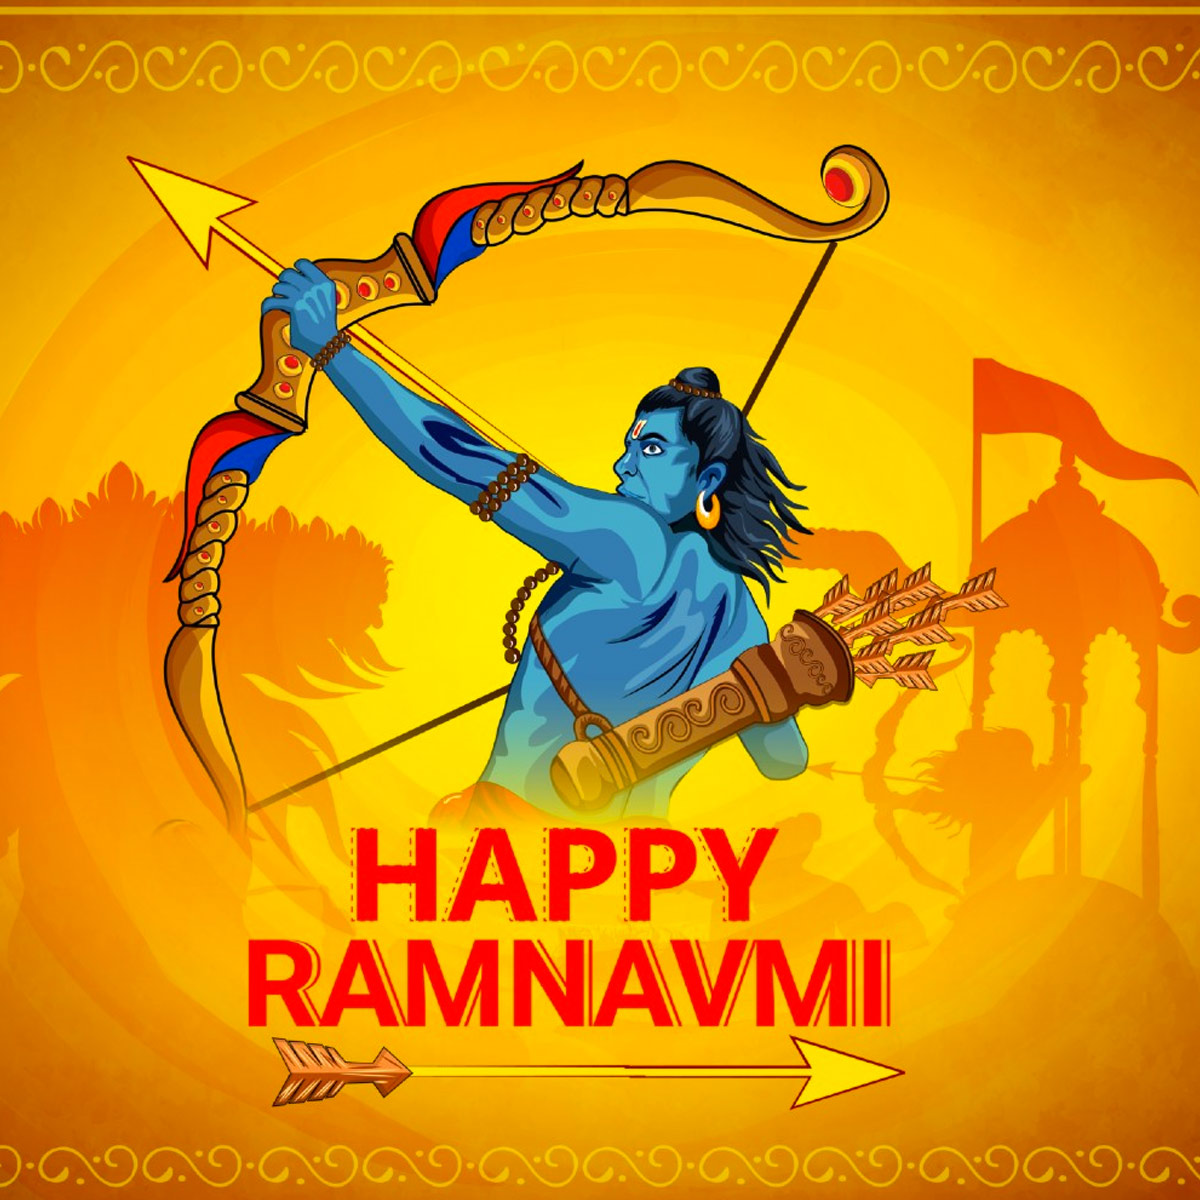 Ram Navami Essay in Hindi रामनवमी पर निबंध PDF में डाउनलोड करें